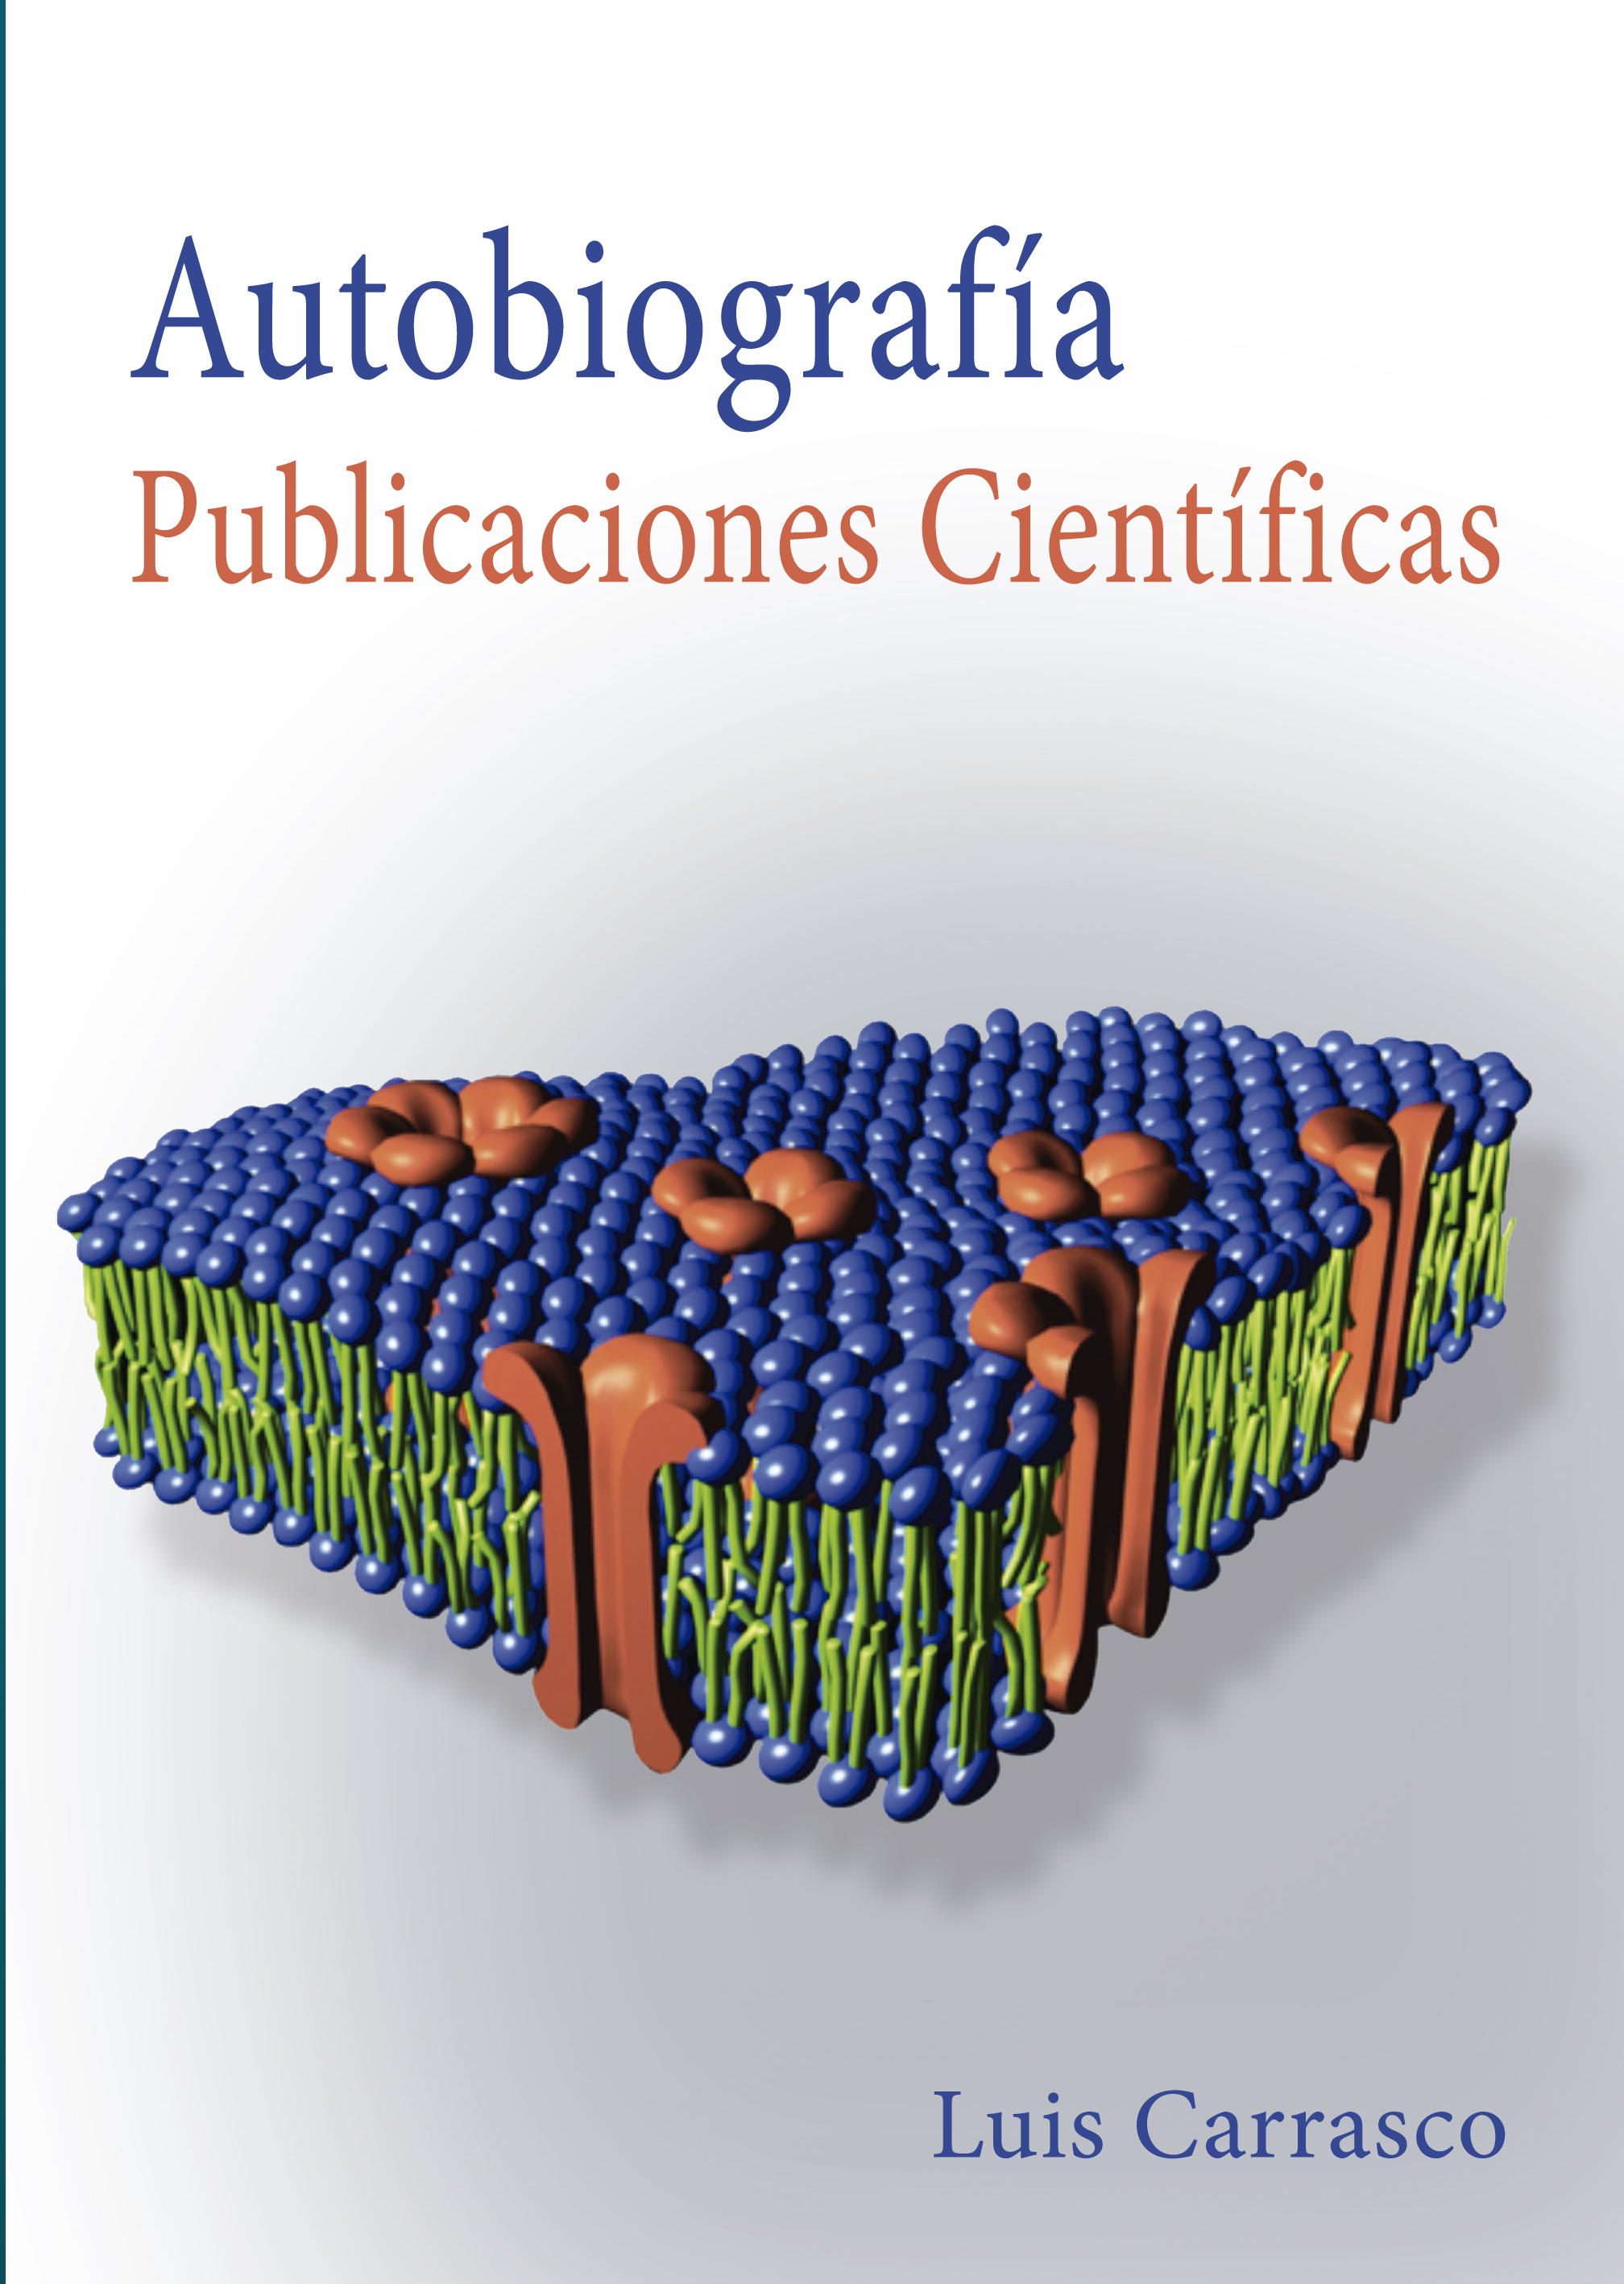 Luis Carrasco: Autobiografía. Publicaciones científicas